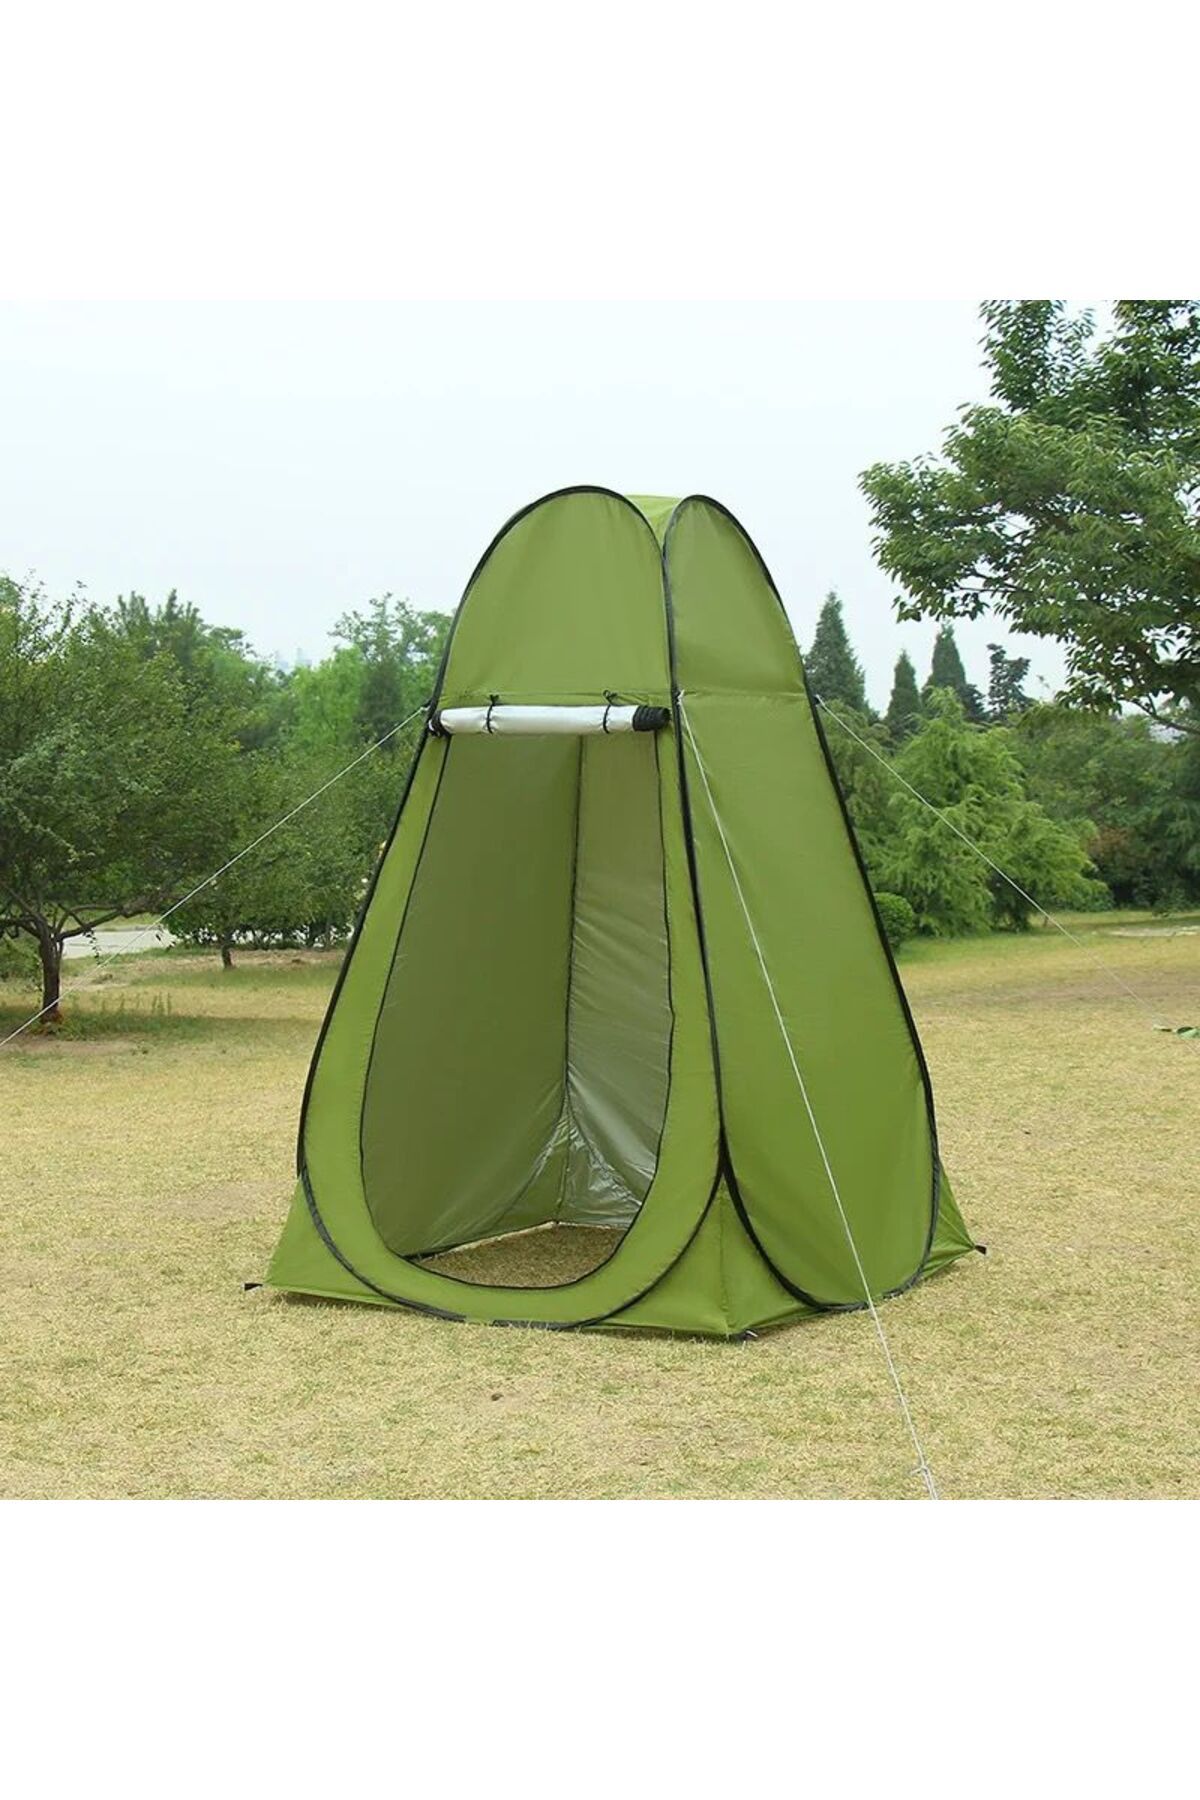 XTRIKE ME Kamp Alanı Otomatik Duş Giyinme Wc Çadırı Fotoğrafcı Prova Kabini Çadırı Kamp Çadırı 120*120*190 CM